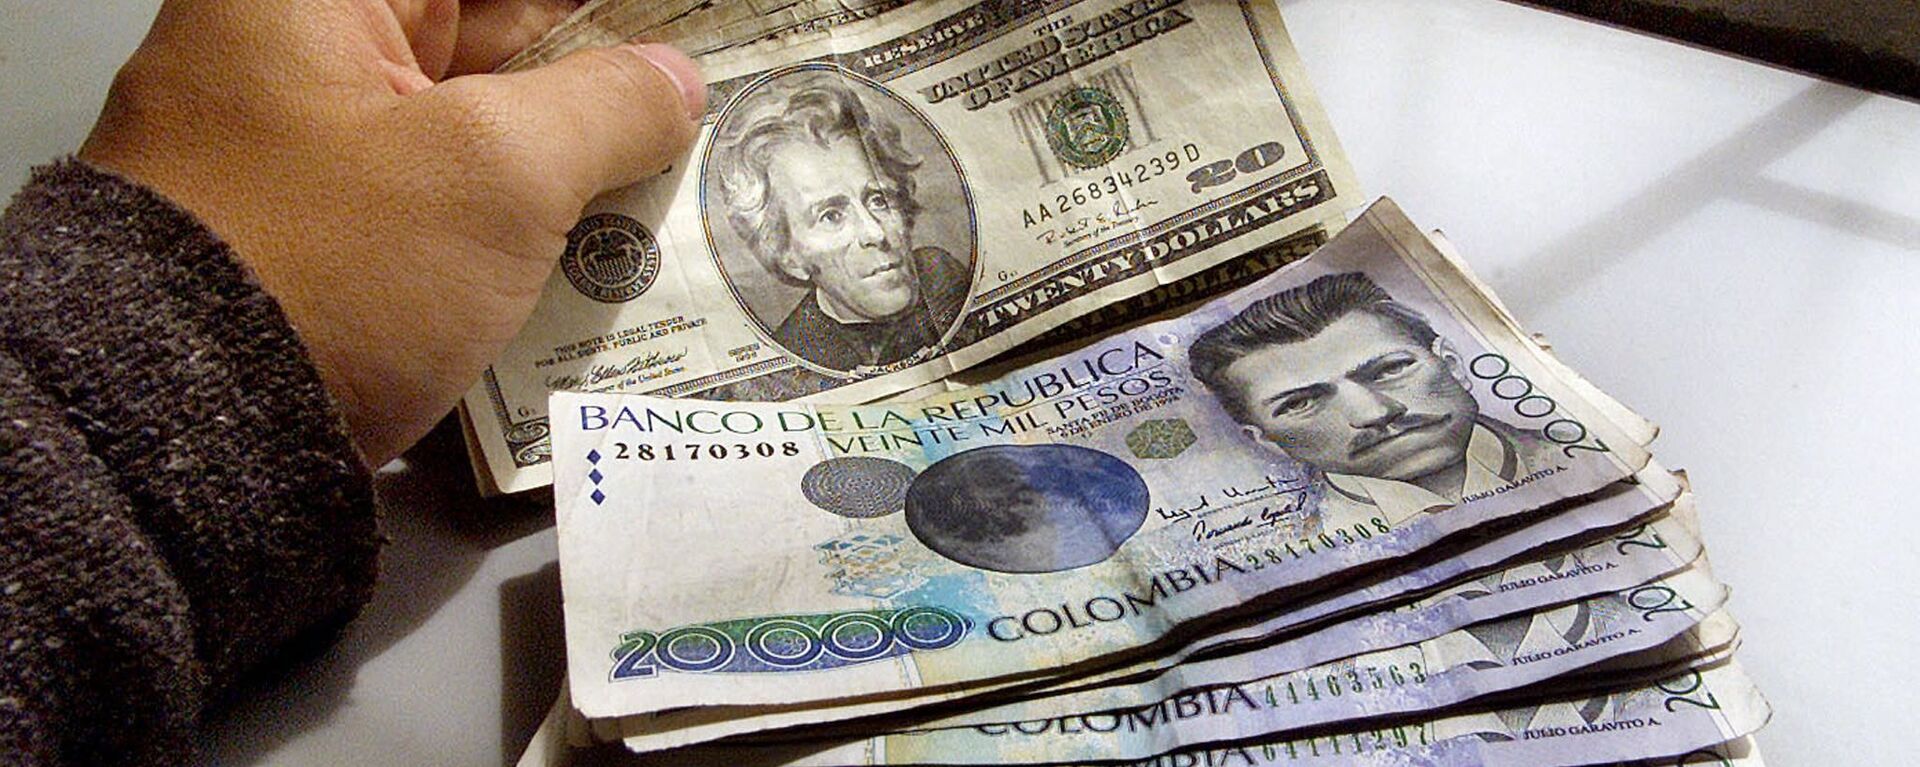 Pesos colombianos y dólares - Sputnik Mundo, 1920, 26.03.2021